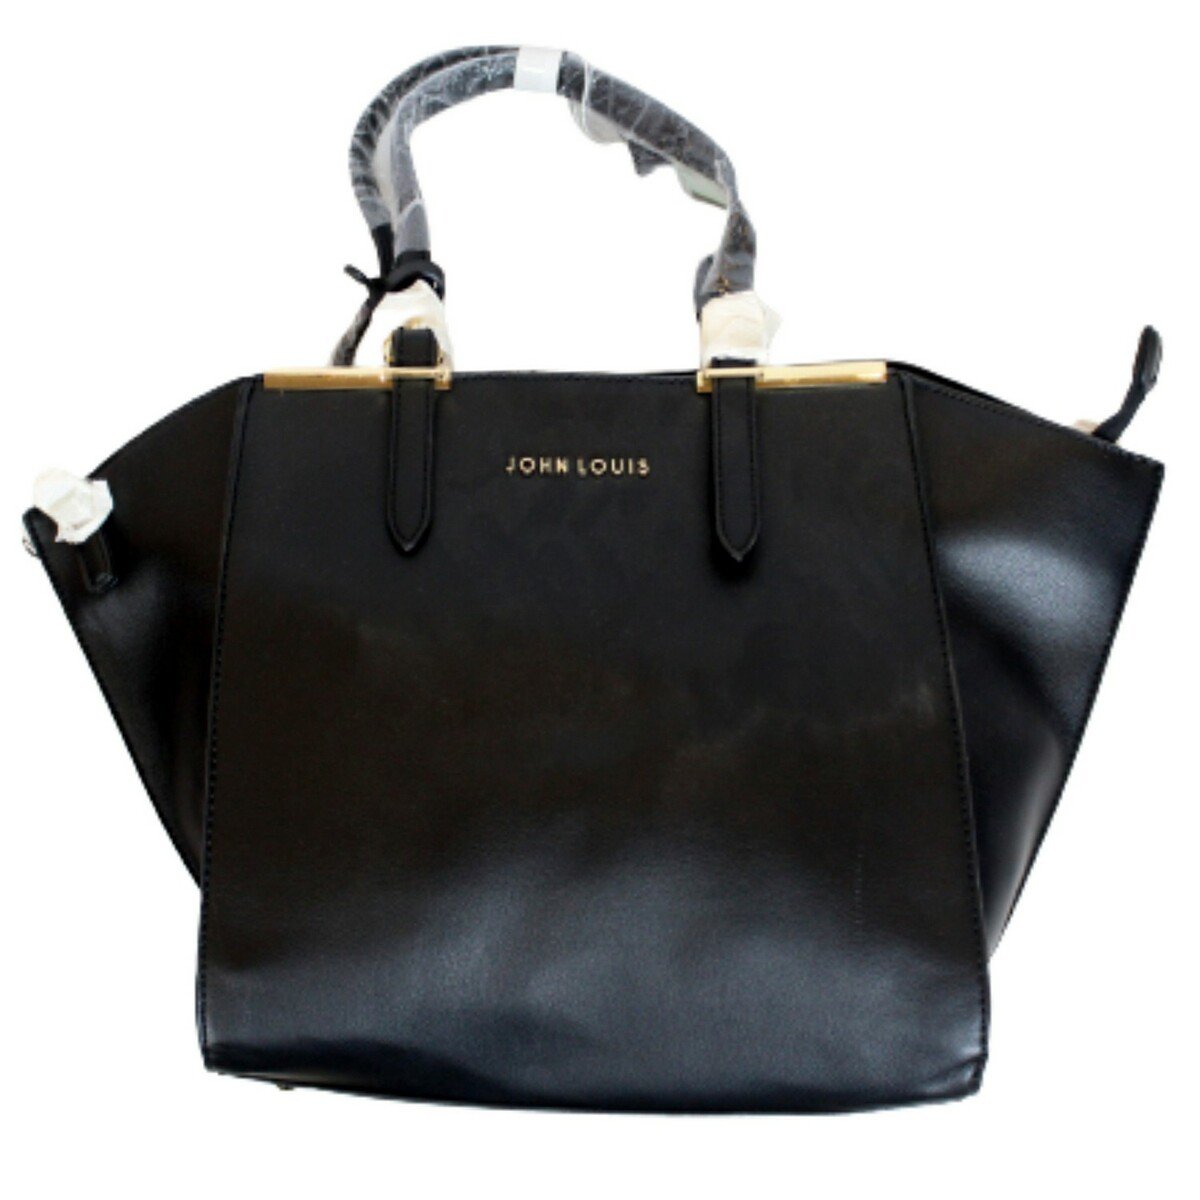 John Louis Ladies Bag JLSU204, Black price from luluhypermarket in